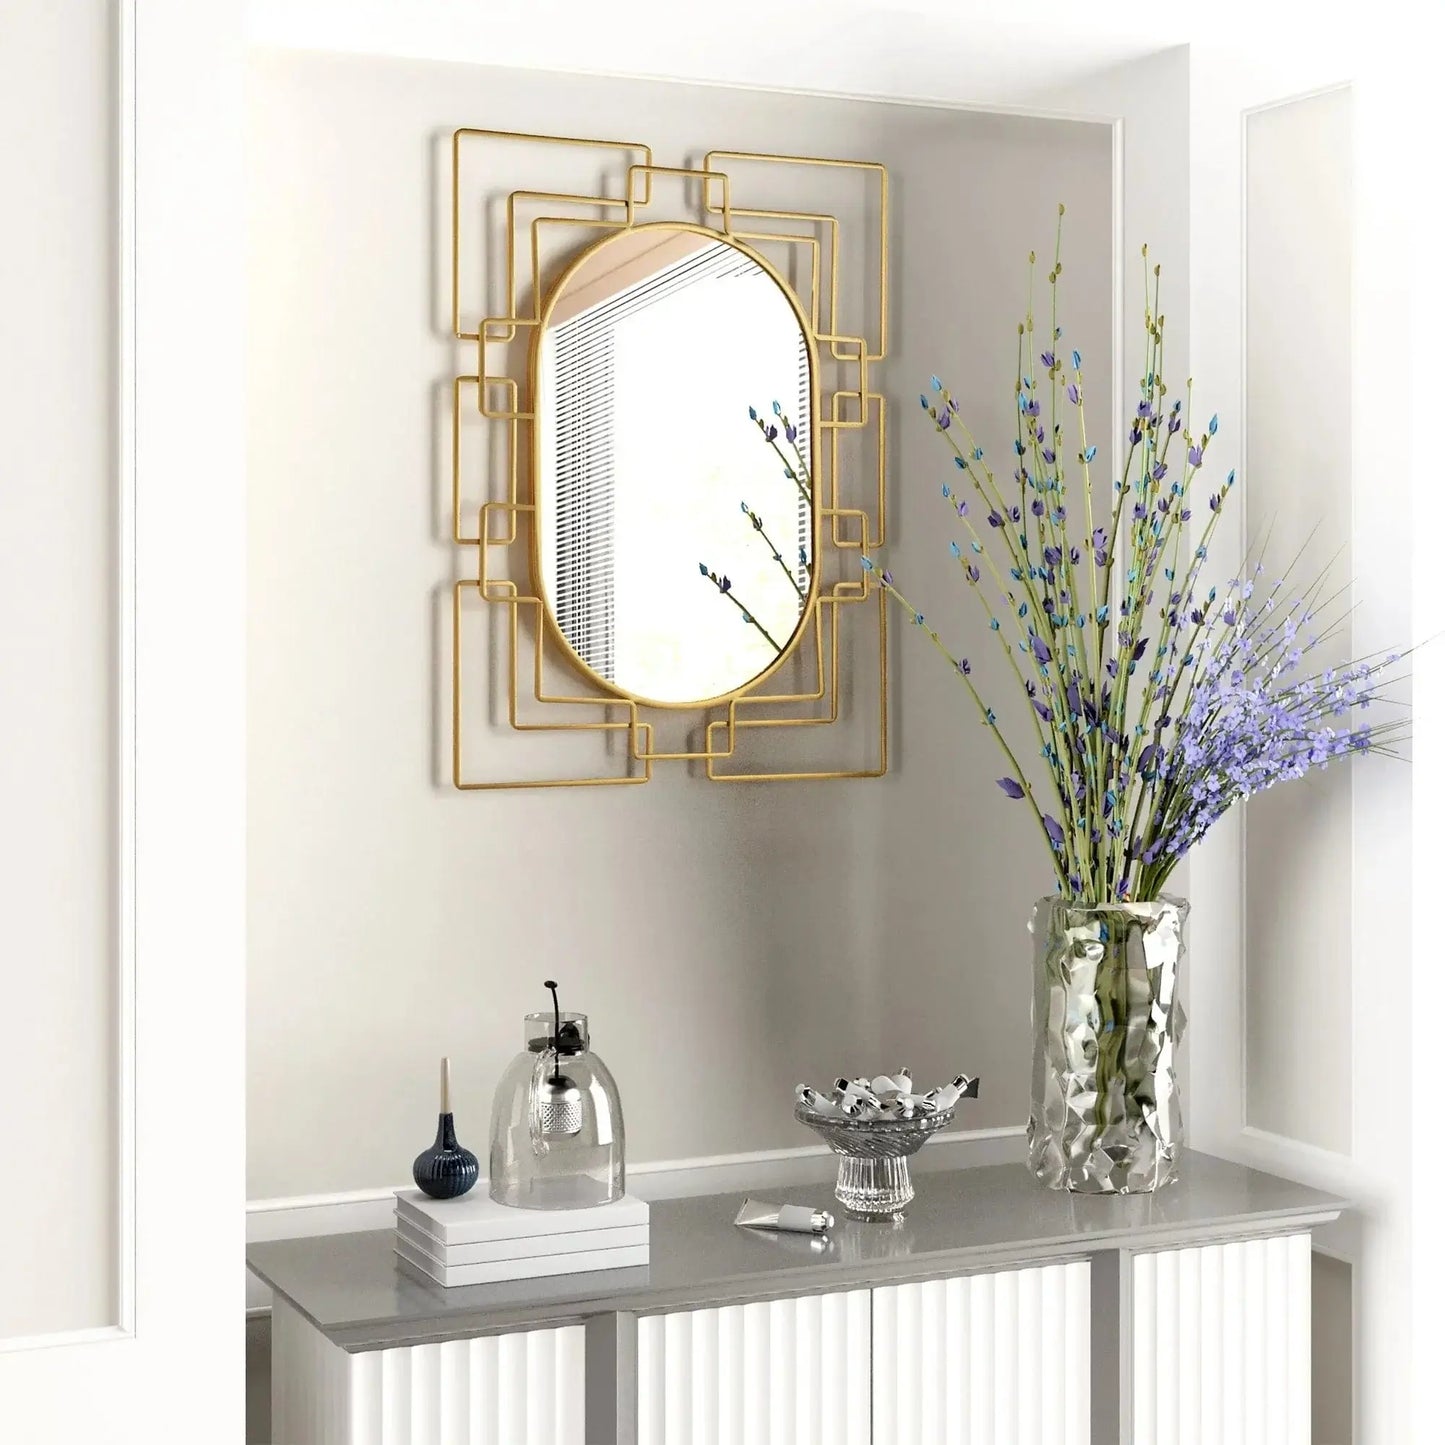 Art deco Gild Design House Deanna Gold Decorative Mirror above a modern entryway console.